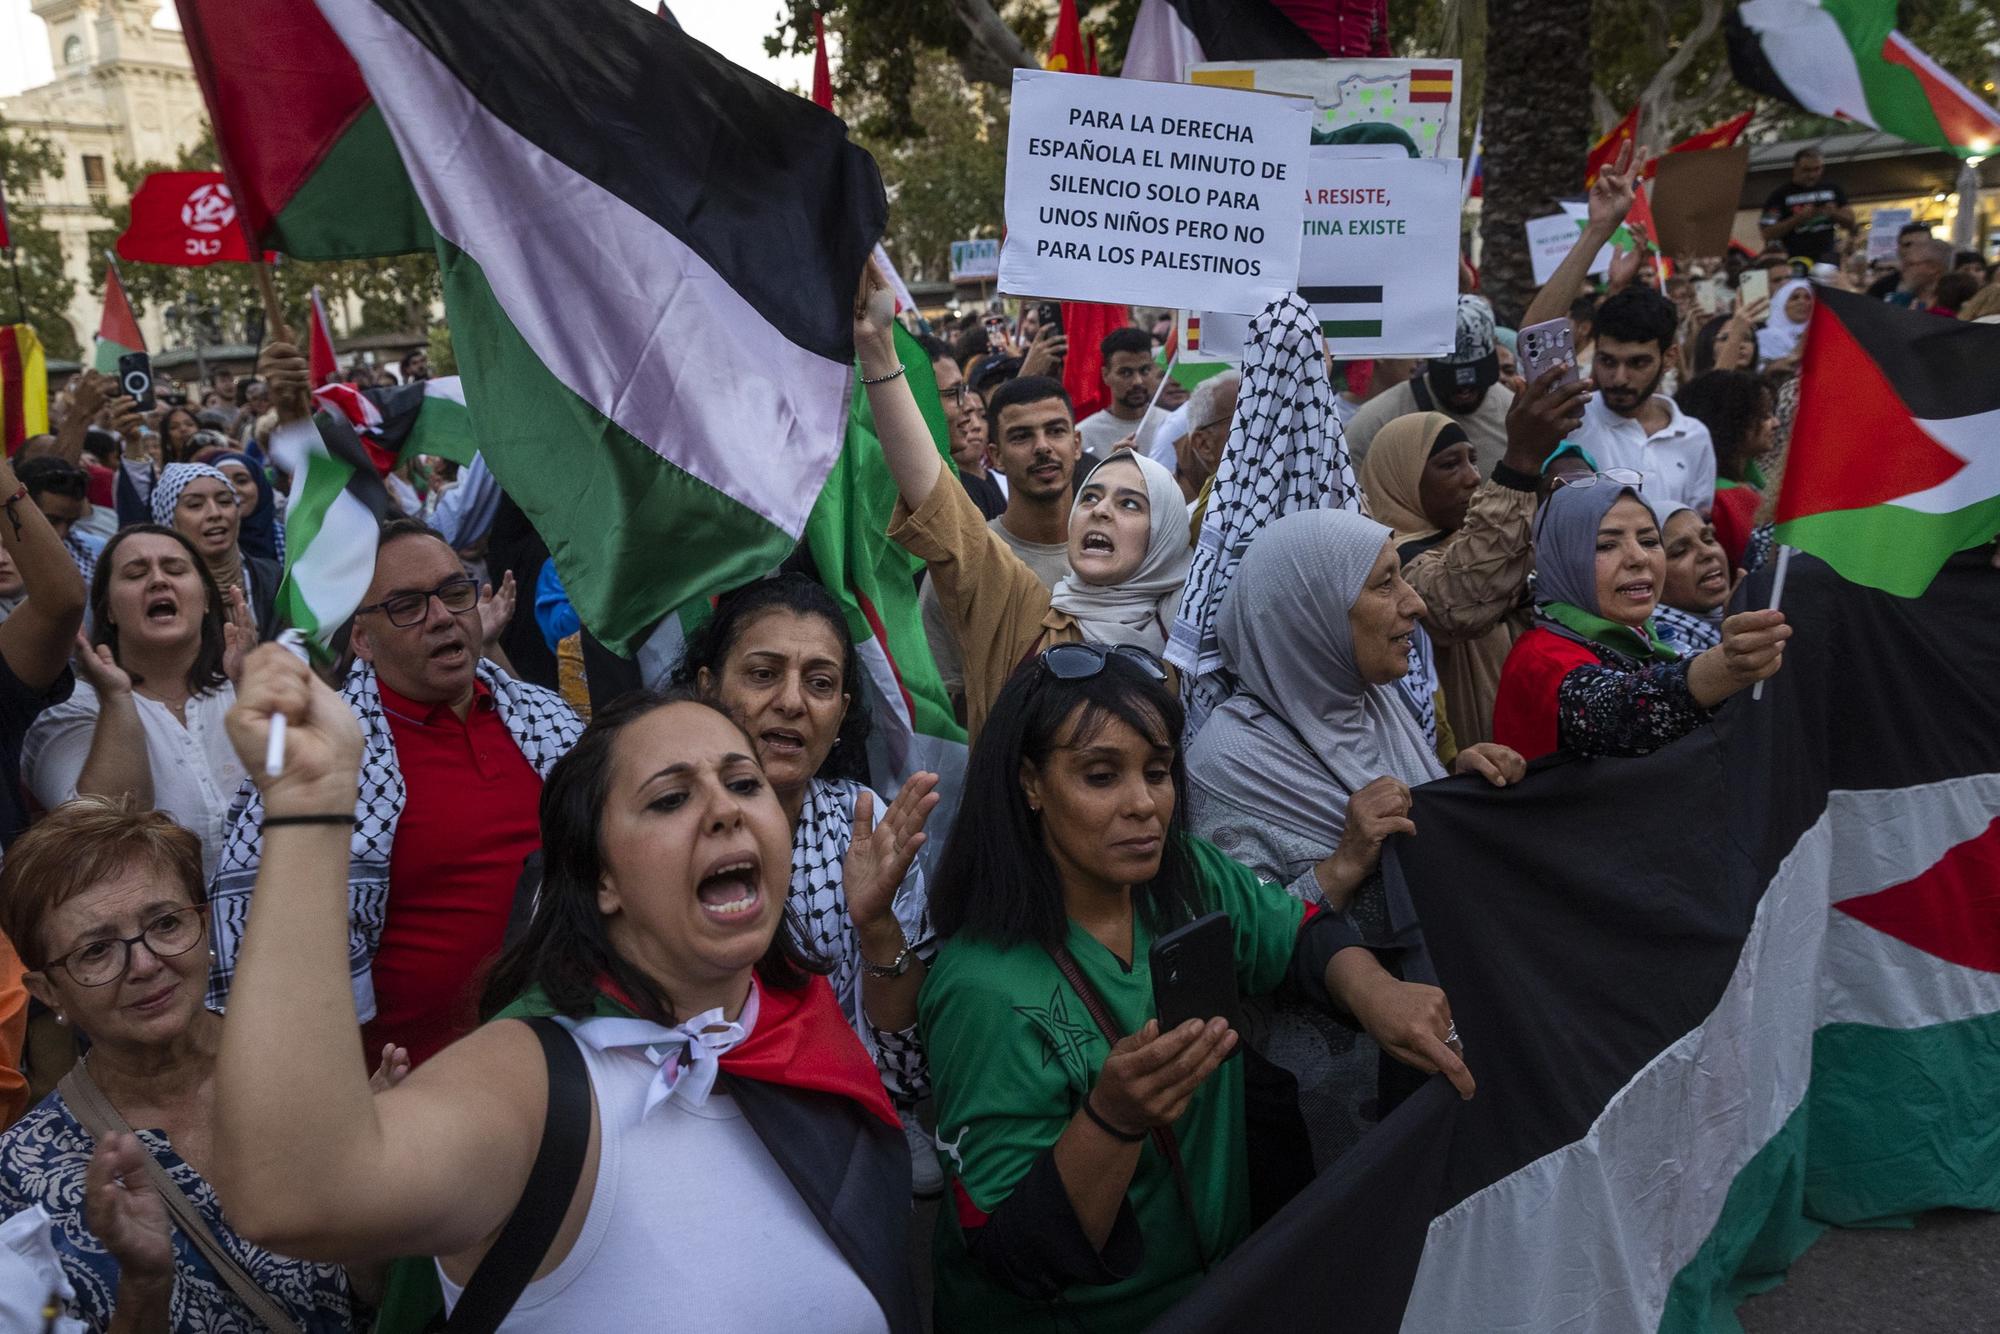 Concentraciones por todo el Estado en solidaridad con Palestina - 11